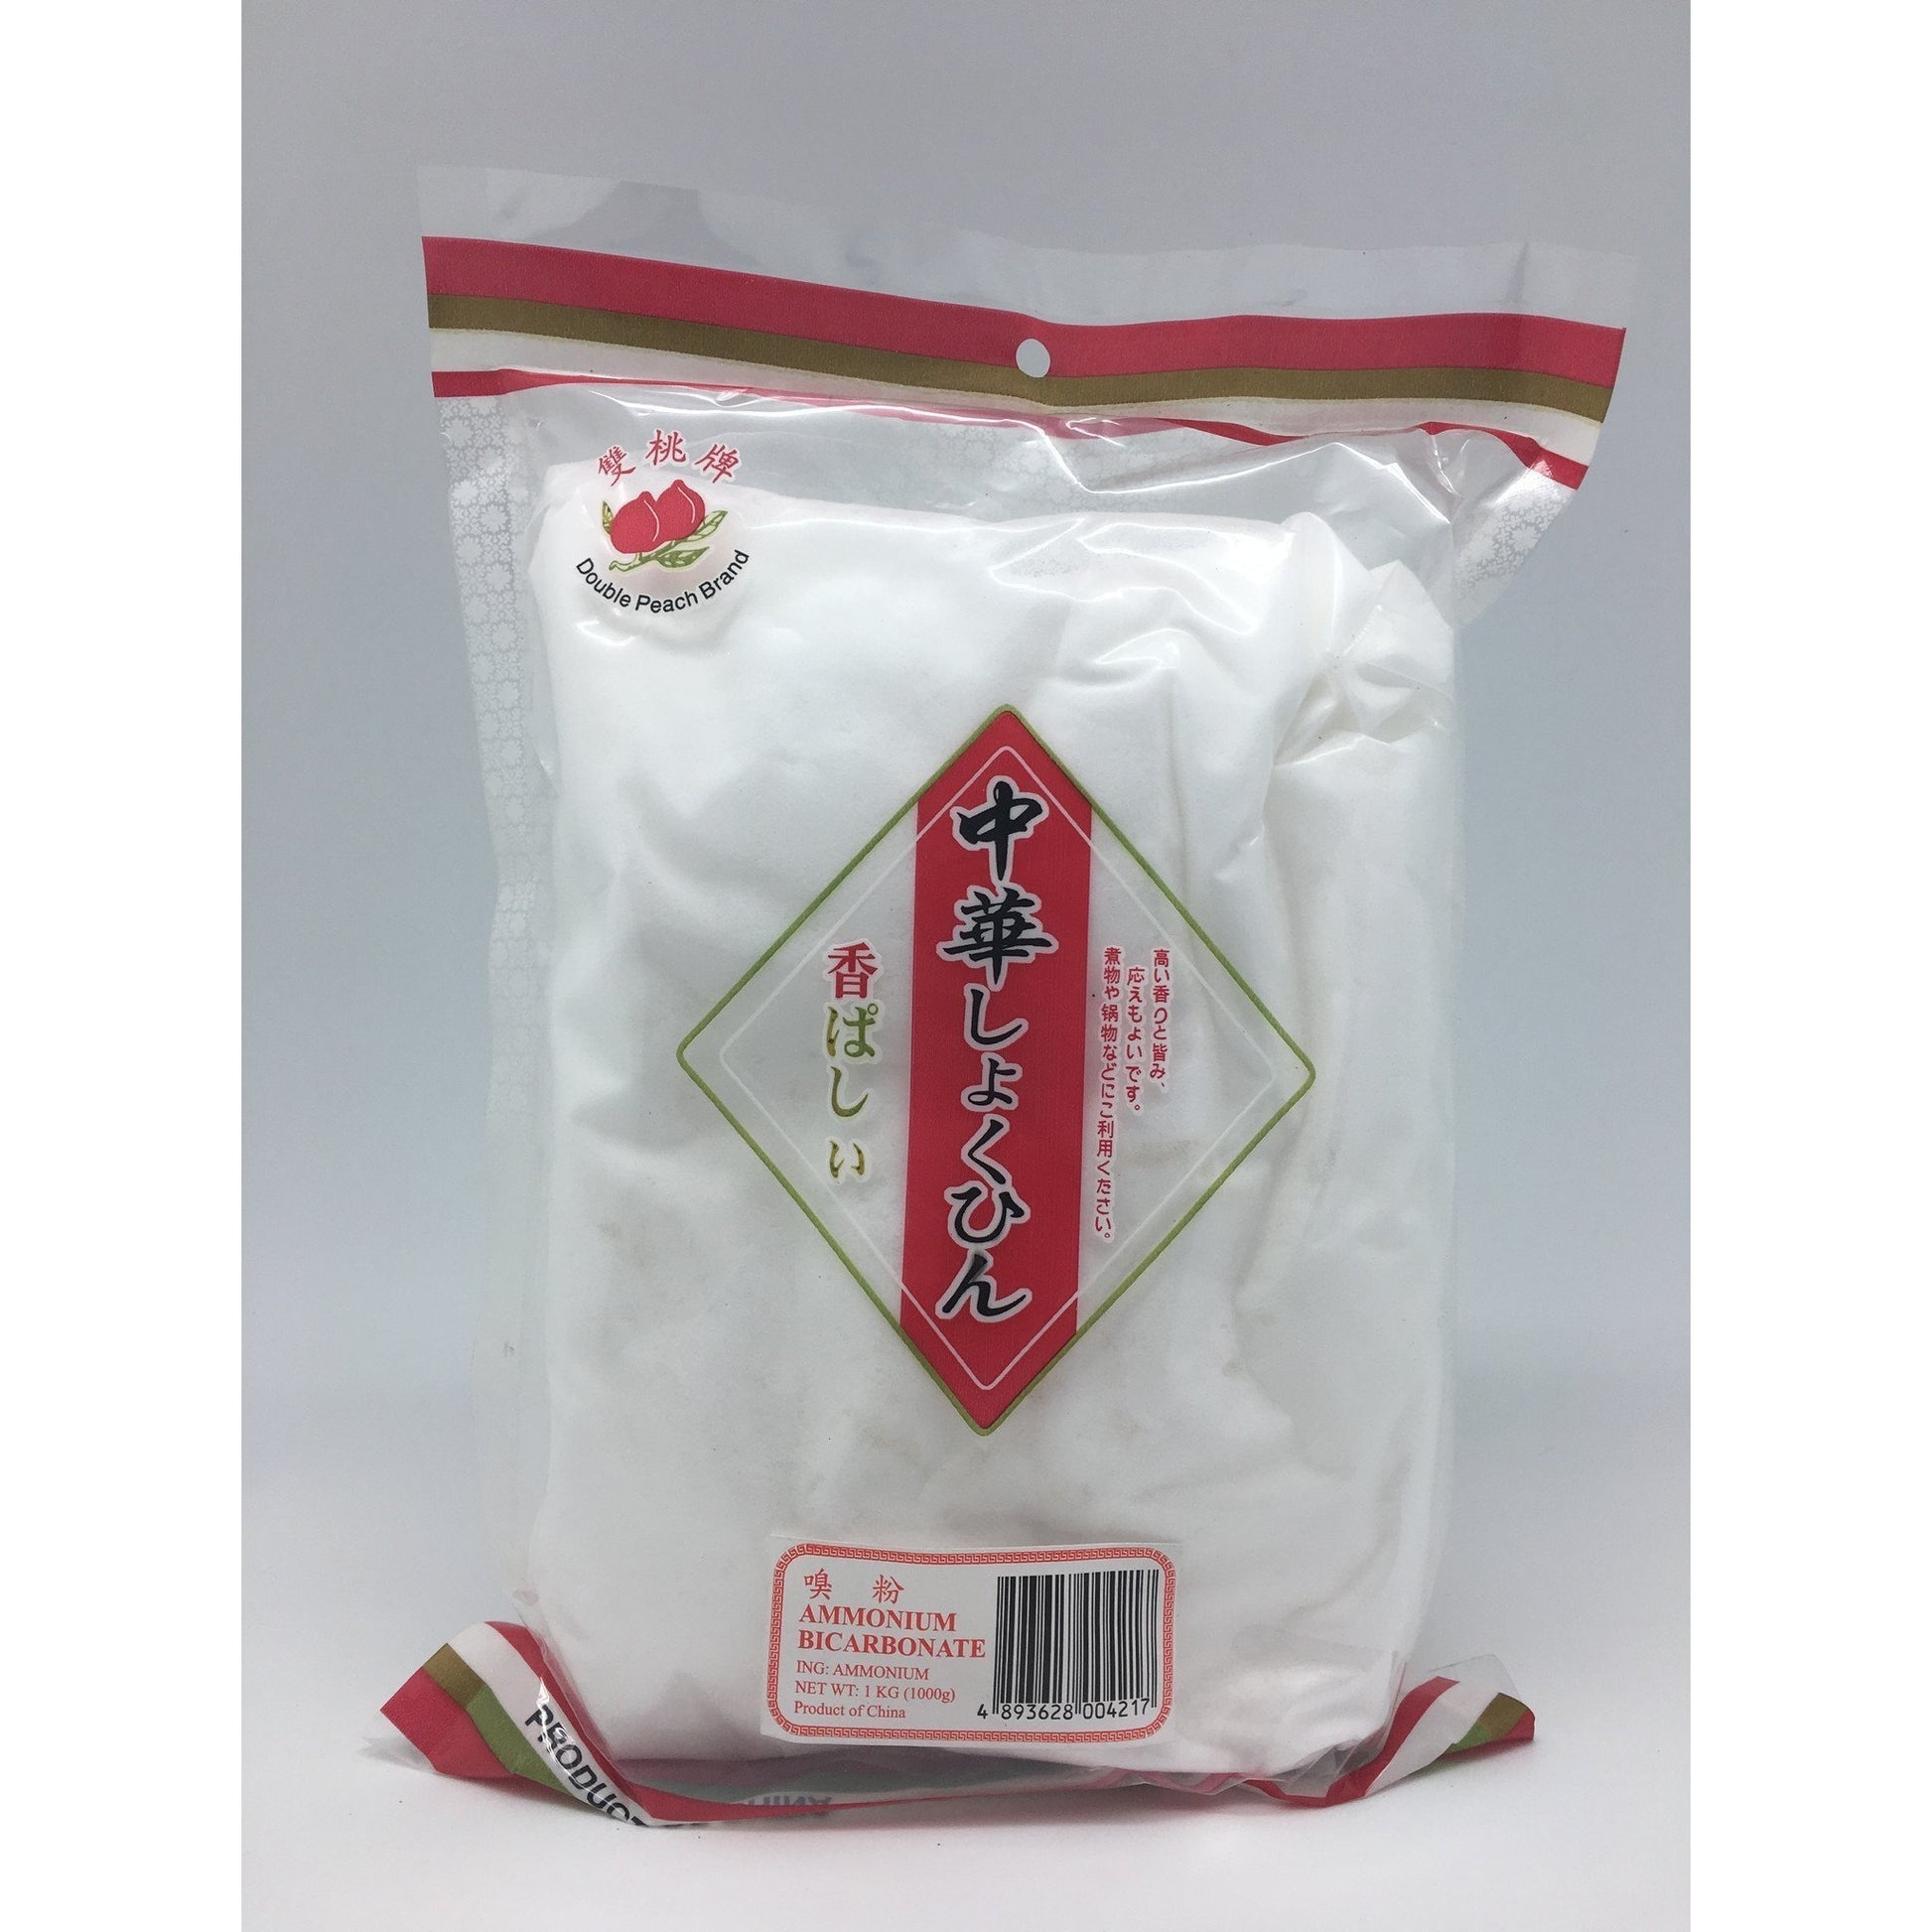 PD048K Double Peach Brand - Ammonium Bicarbonate 1kg -  25 bags / 1CTN - New Eastland Pty Ltd - Asian food wholesalers